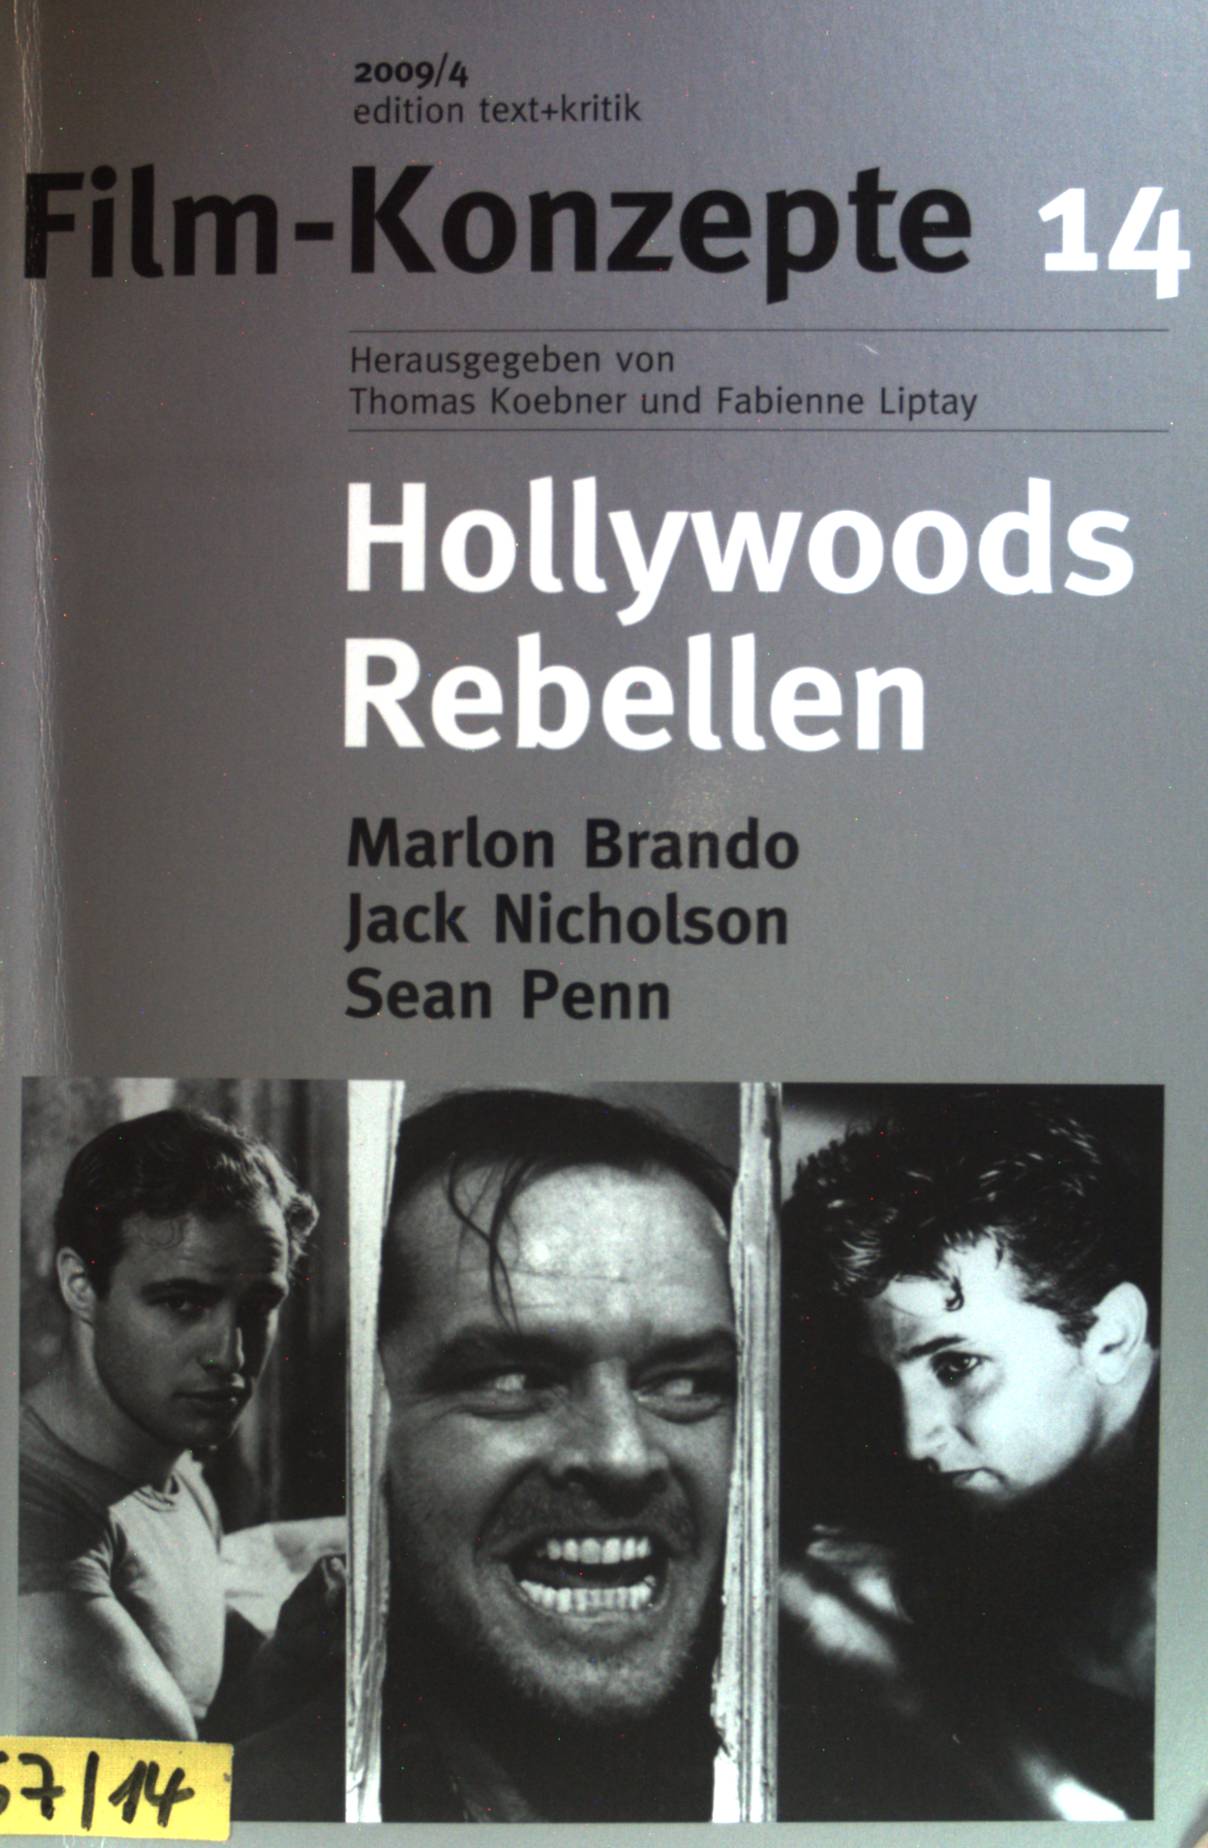 Hollywoods Rebellen : Marlon Brando, Jack Nicholson, Sean Penn. Film-Konzepte 14 - Kleiner, Felicitas (Herausgeber)